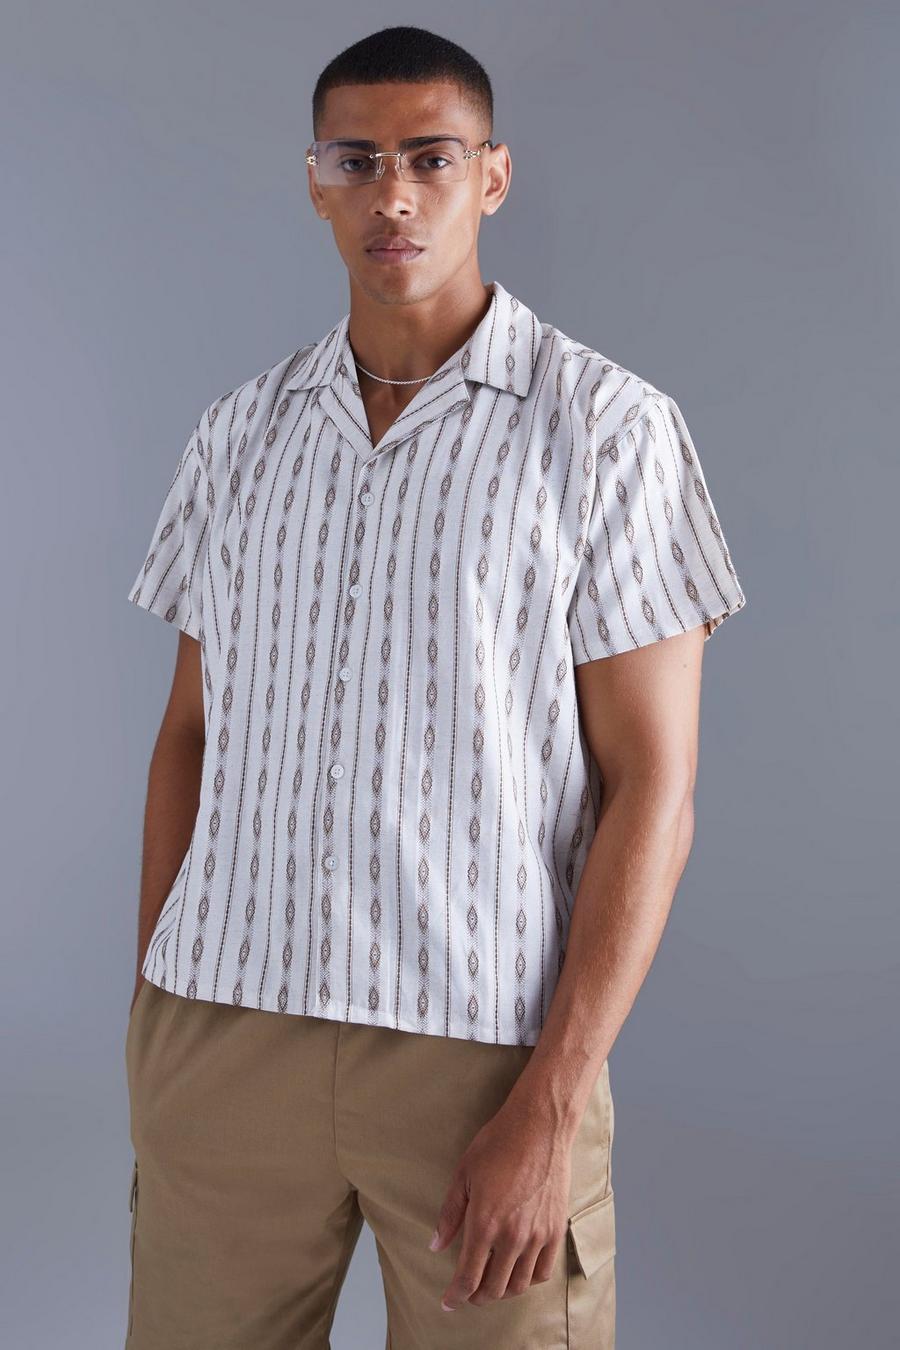 Men's Printed Shirts | Mens Patterned Shirts & Floral Shirts | boohoo UK